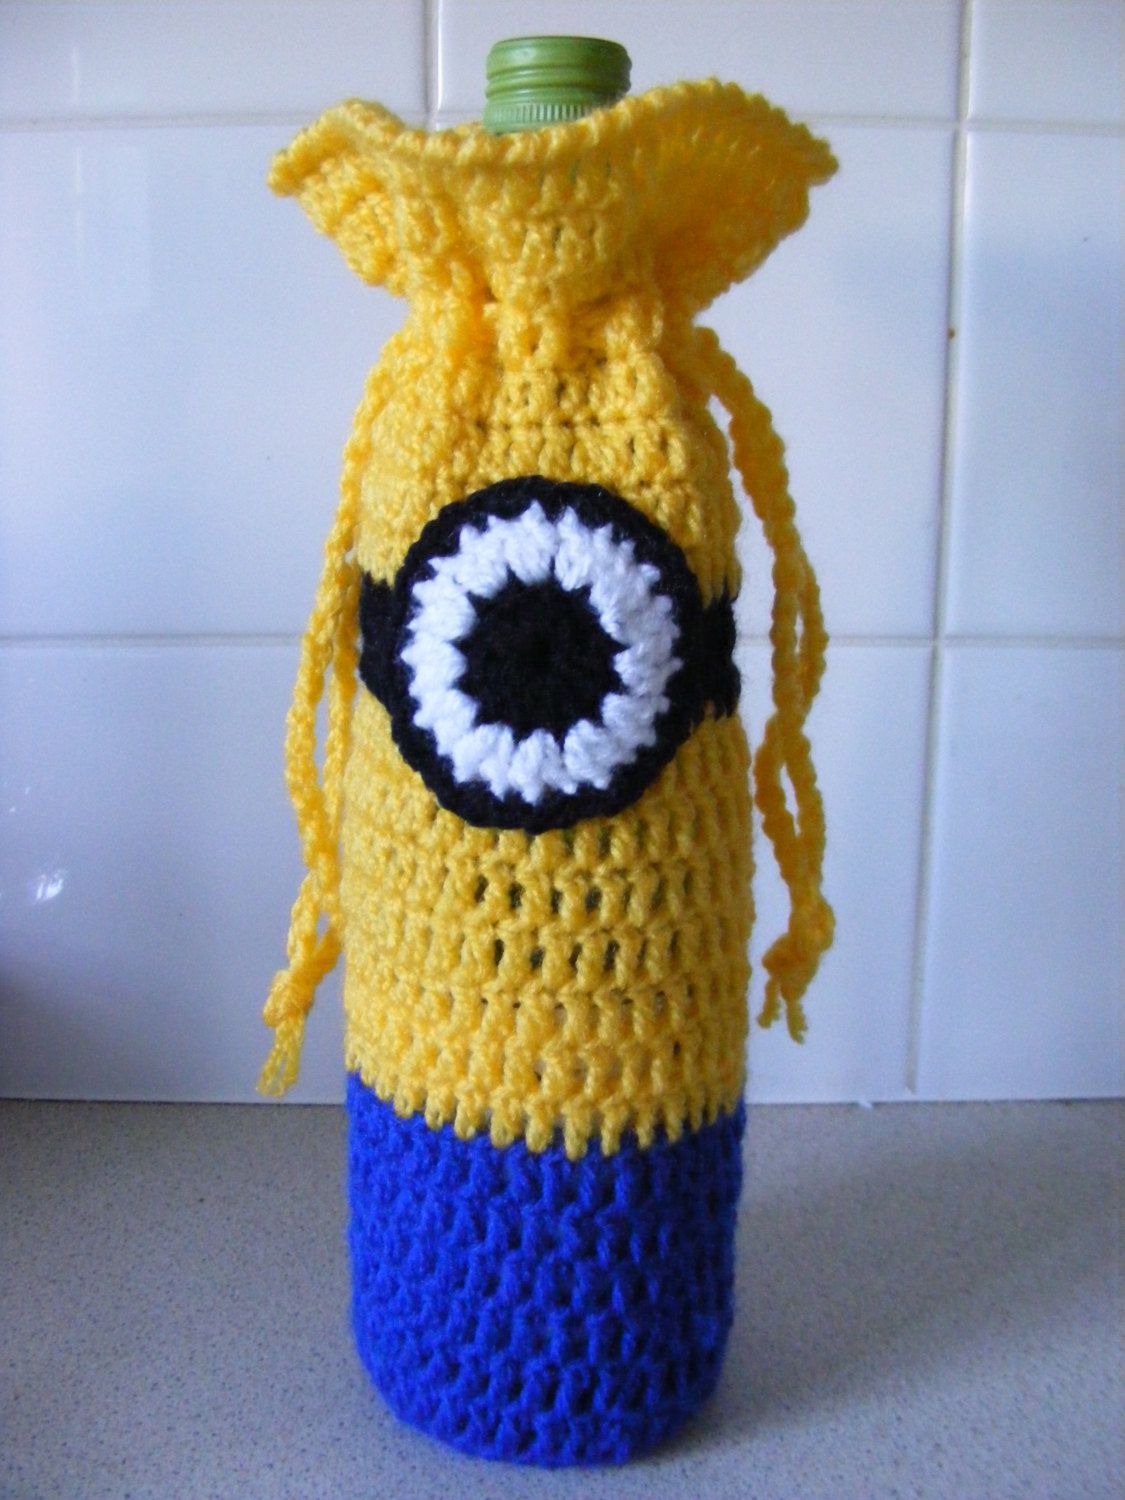 crochet bottle holder instruction to make